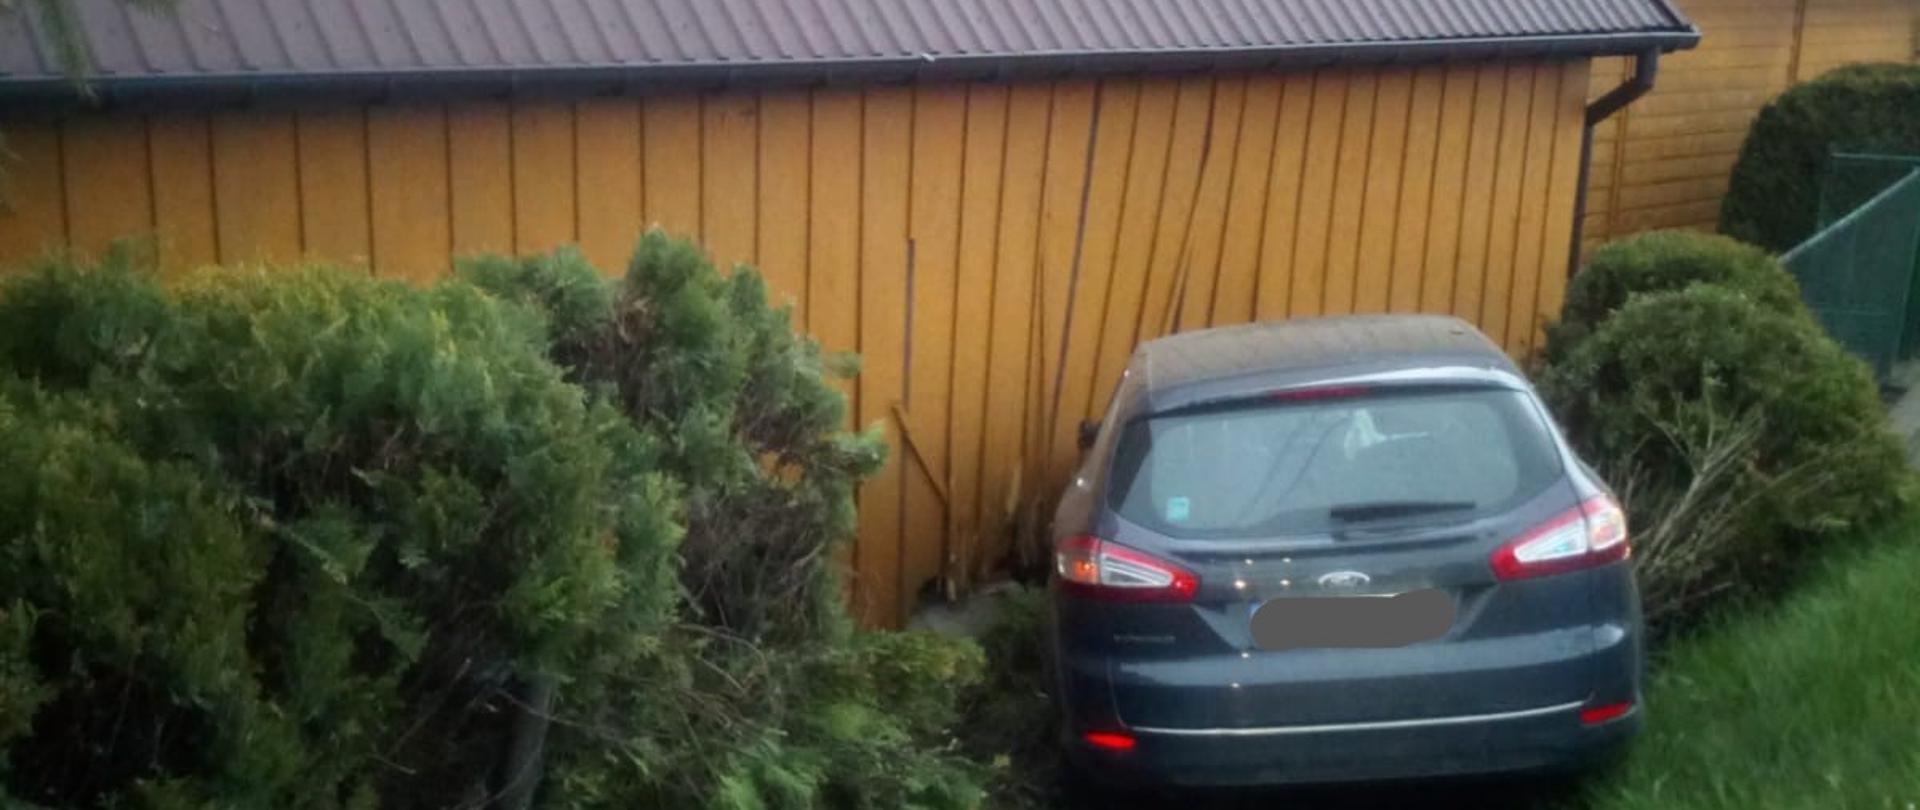 Na zdjęciu widoczny jest samochód osobowy, który uderzył w budynek gospodarczy- uszkodzenia drewnianej ściany. Poniżej widzimy zniszczona siatkę ogrodzeniową oraz krzewy.